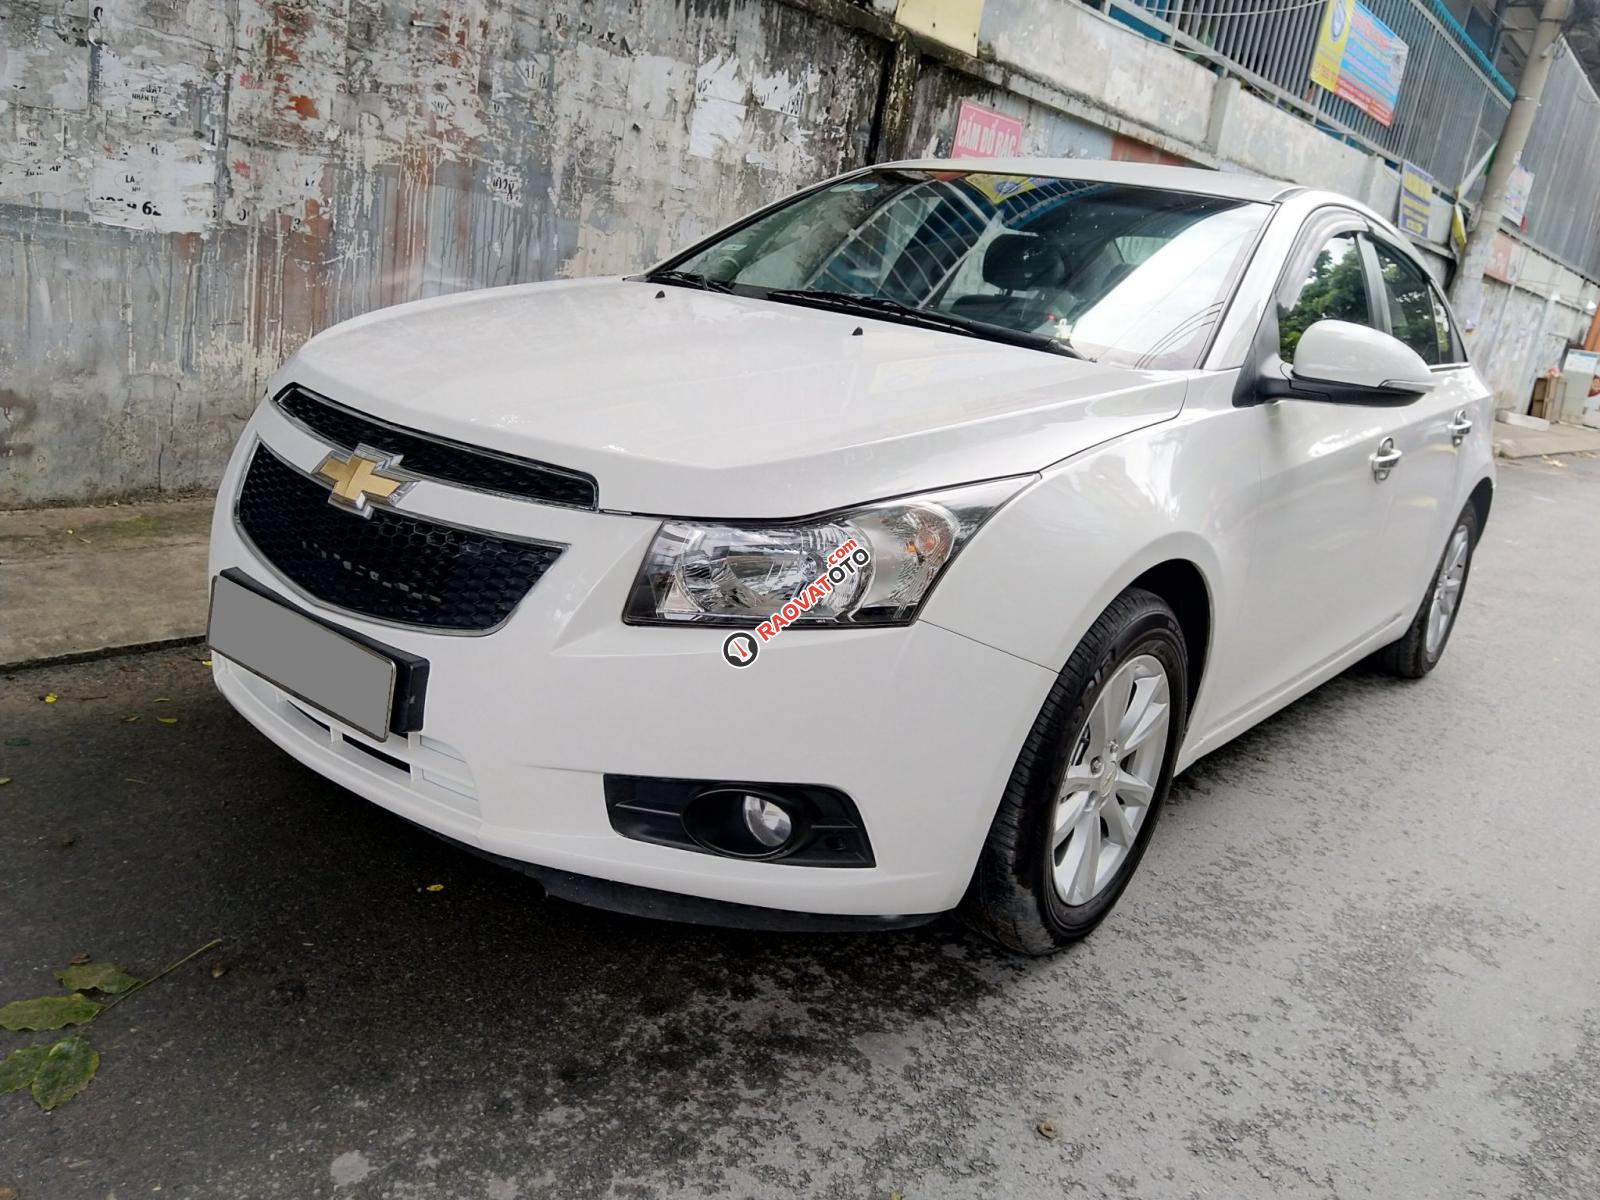 Mình bán Chevrolet Cruze LT 2016 màu trắng số sàn đi kỹ-1